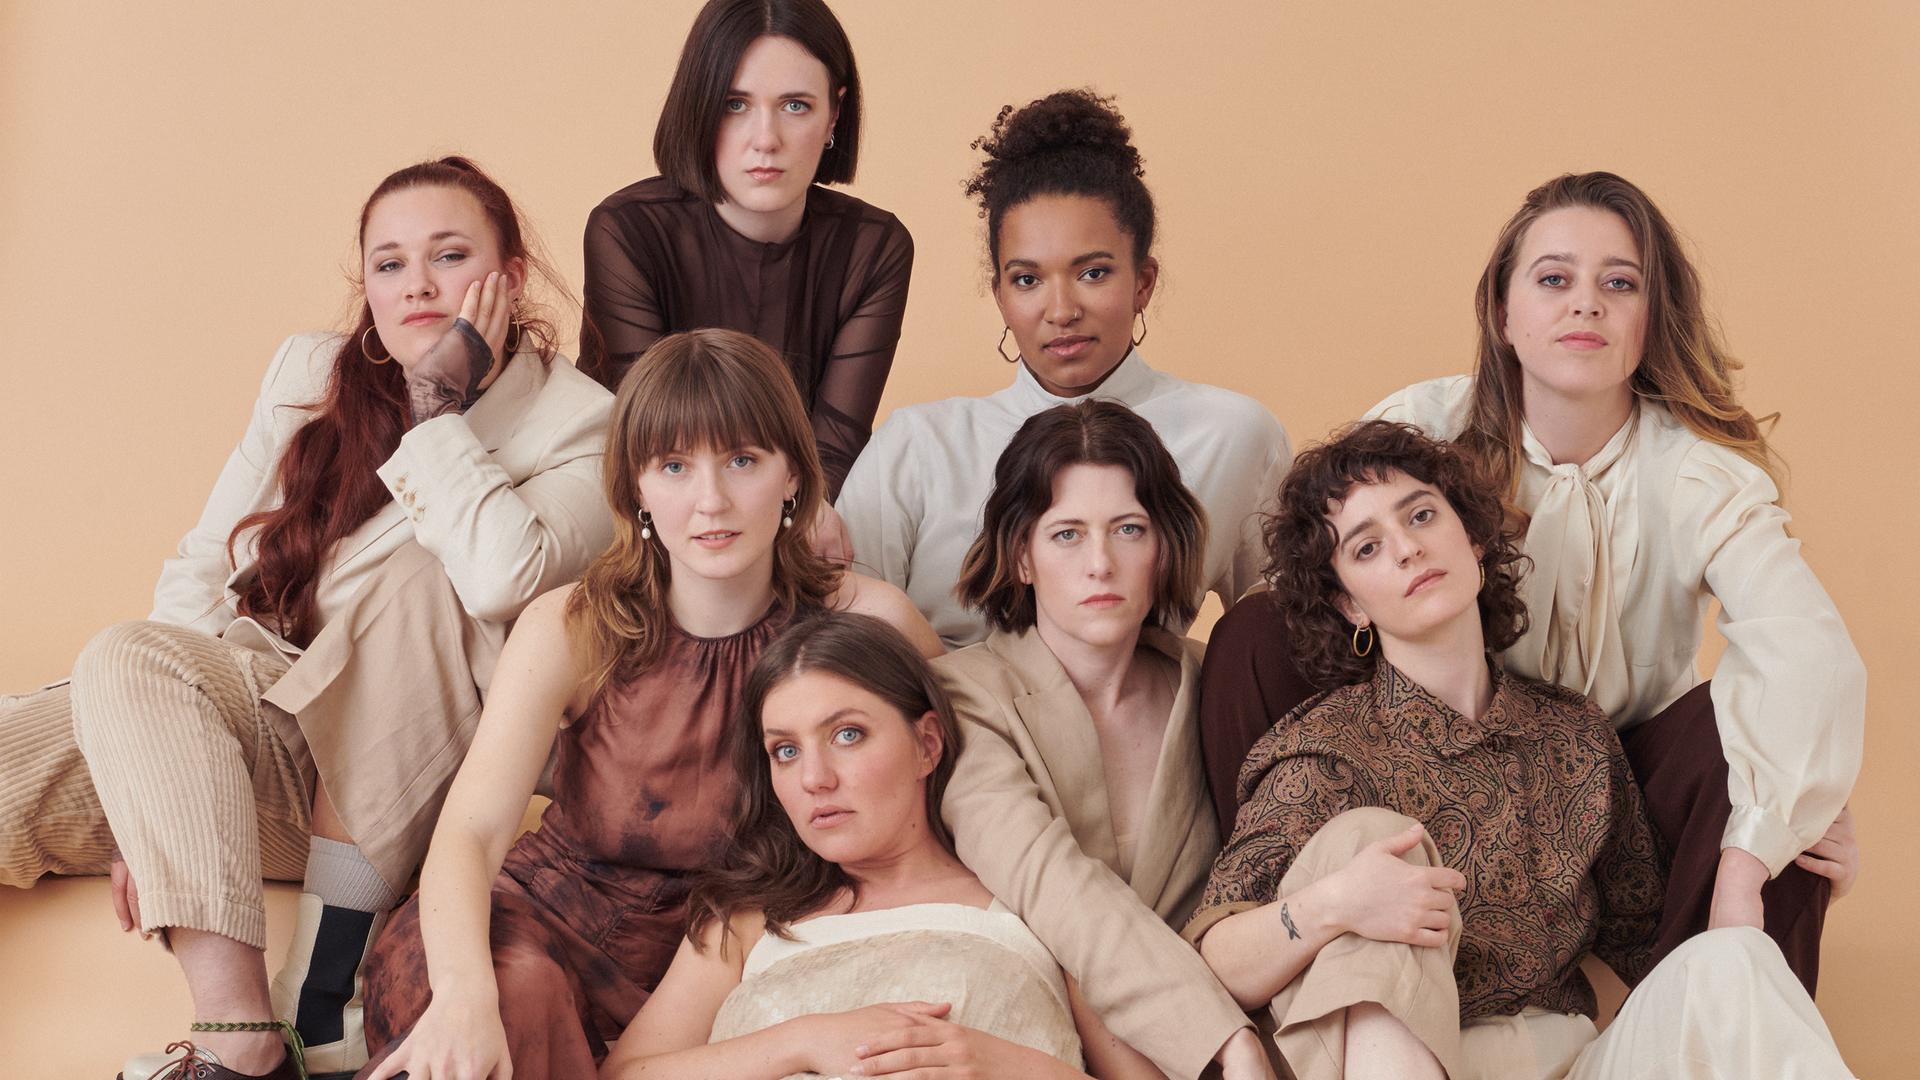 Acht Frauen posieren als Gruppe in beige-brauner Kleidung.